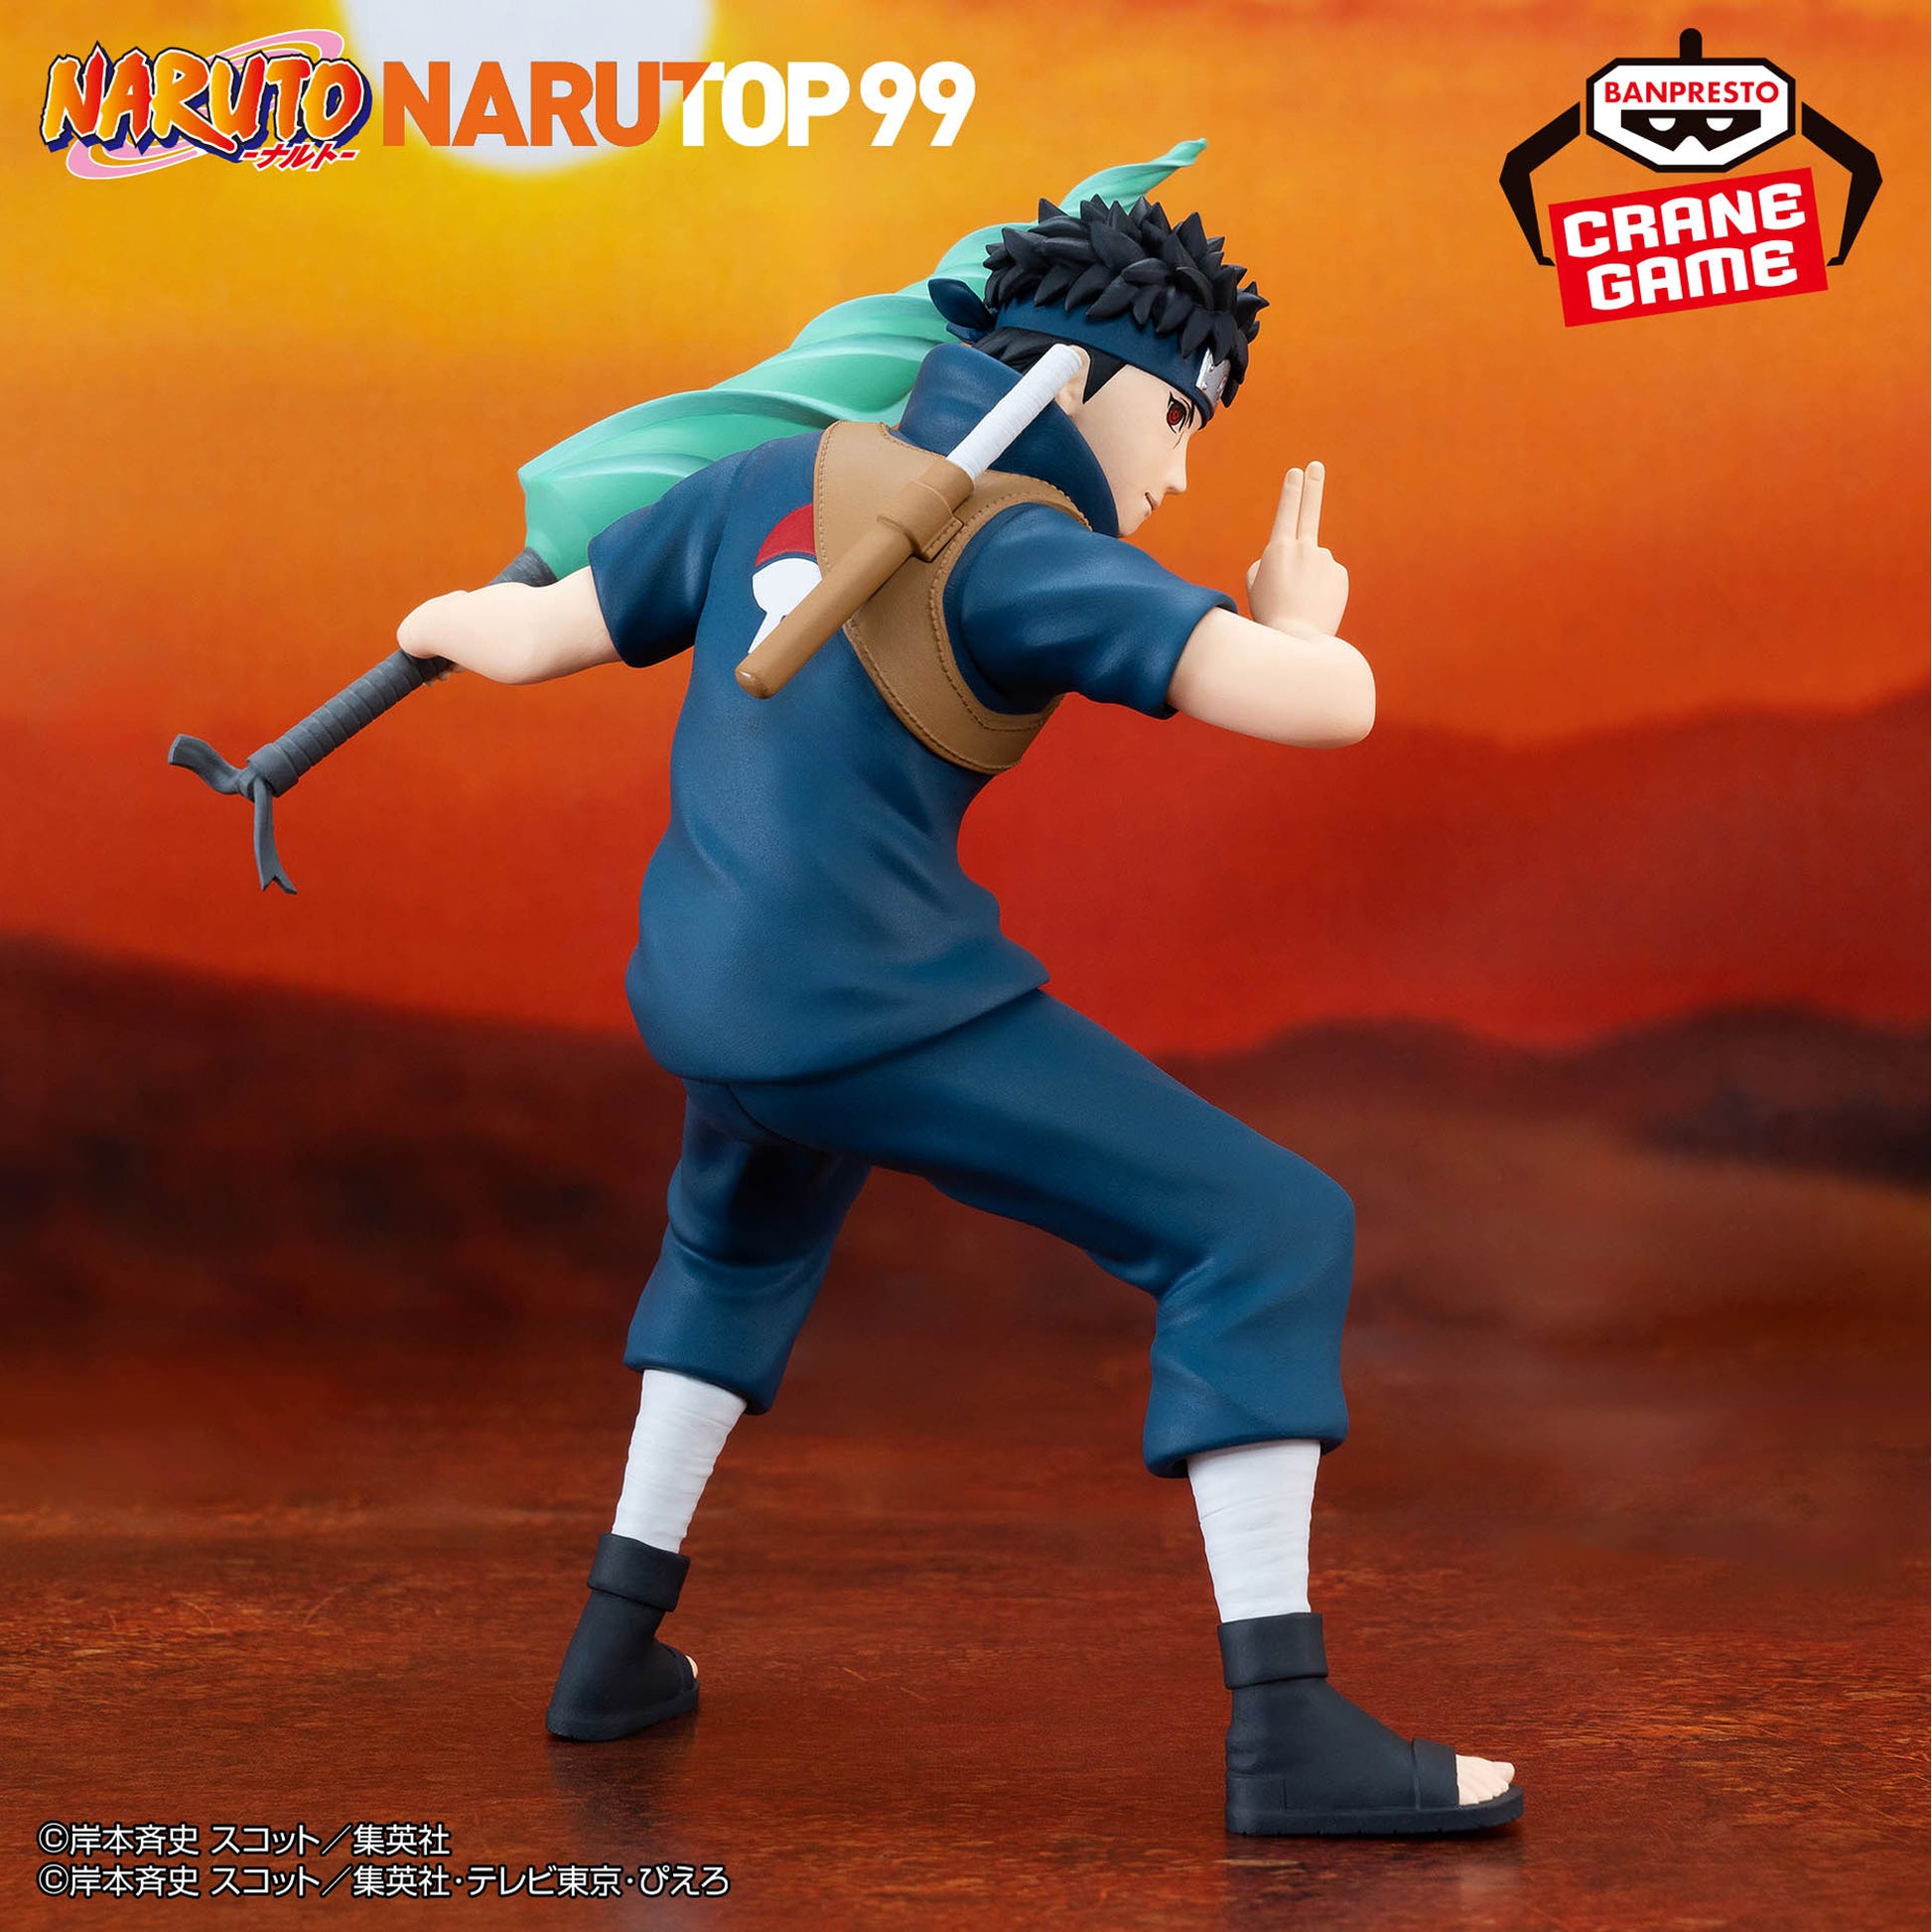 Figurine Shisui Uchiha Narutop99 Naruto Shippuden